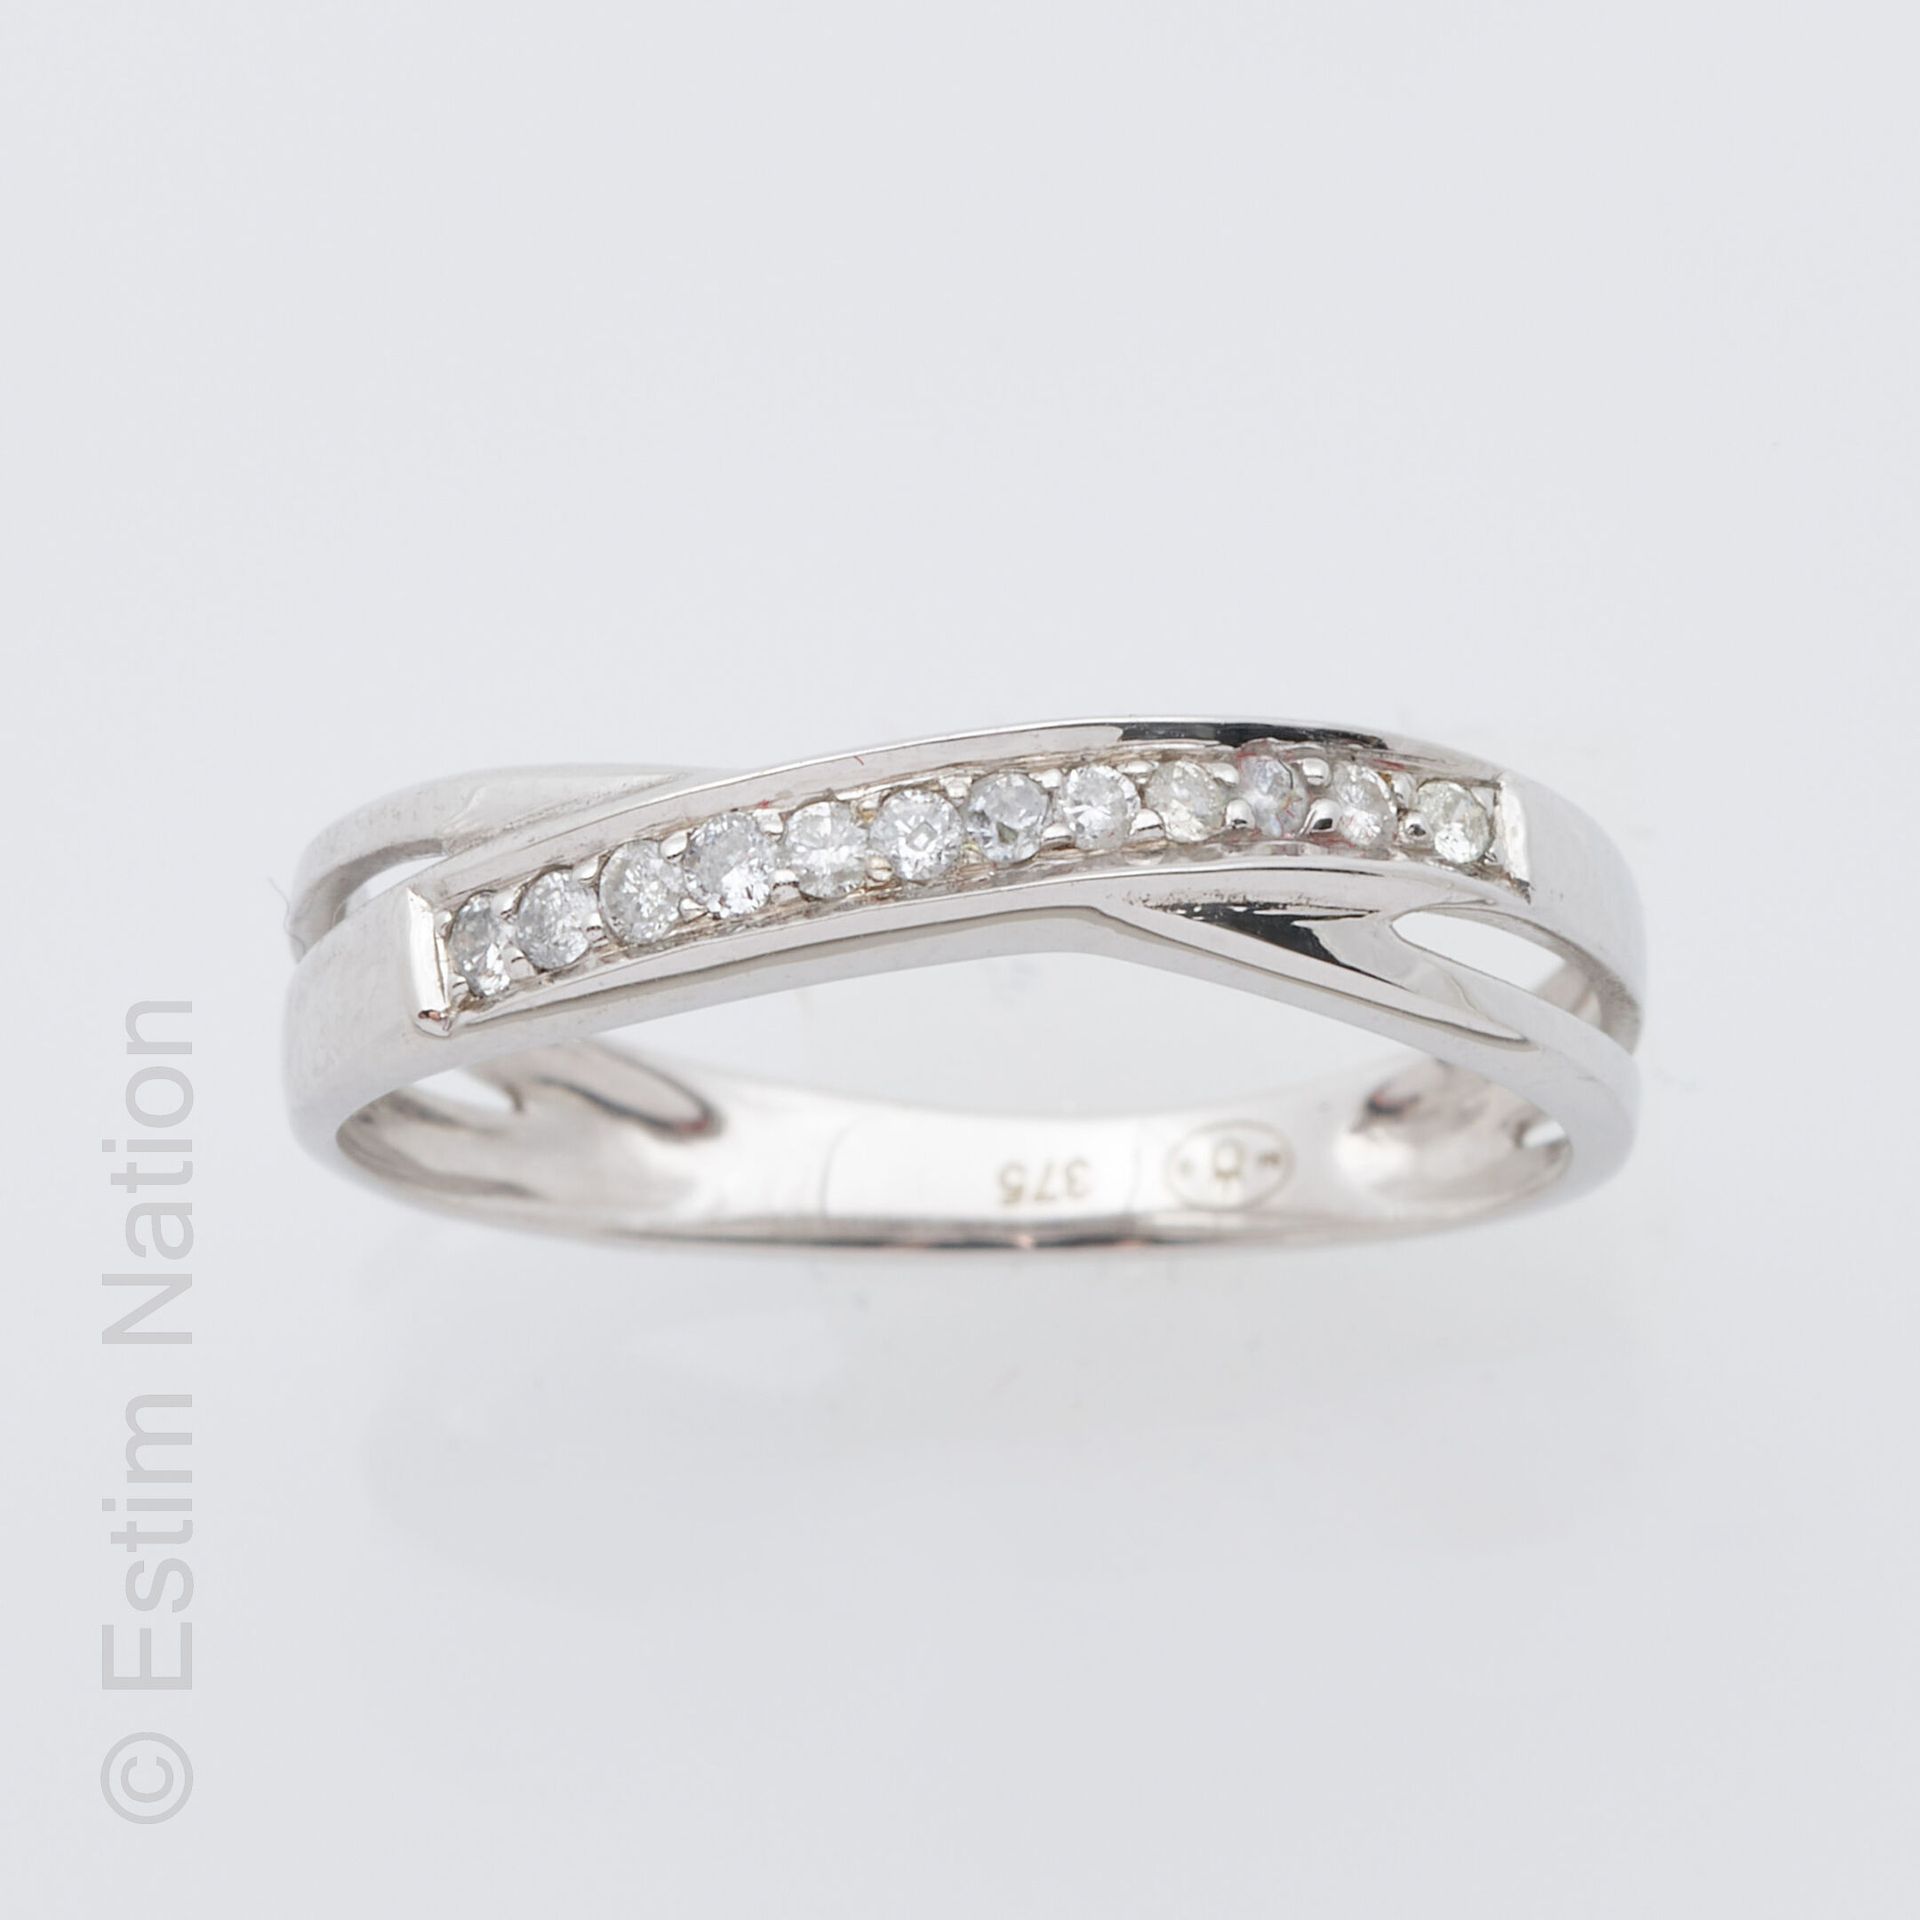 ANNEAU OR GRIS ET DIAMANTS 9K白金（千分之三十五）戒指，交叉图案，饰有一排刻面白色宝石。手指周长：51.5。毛重：1.4克。